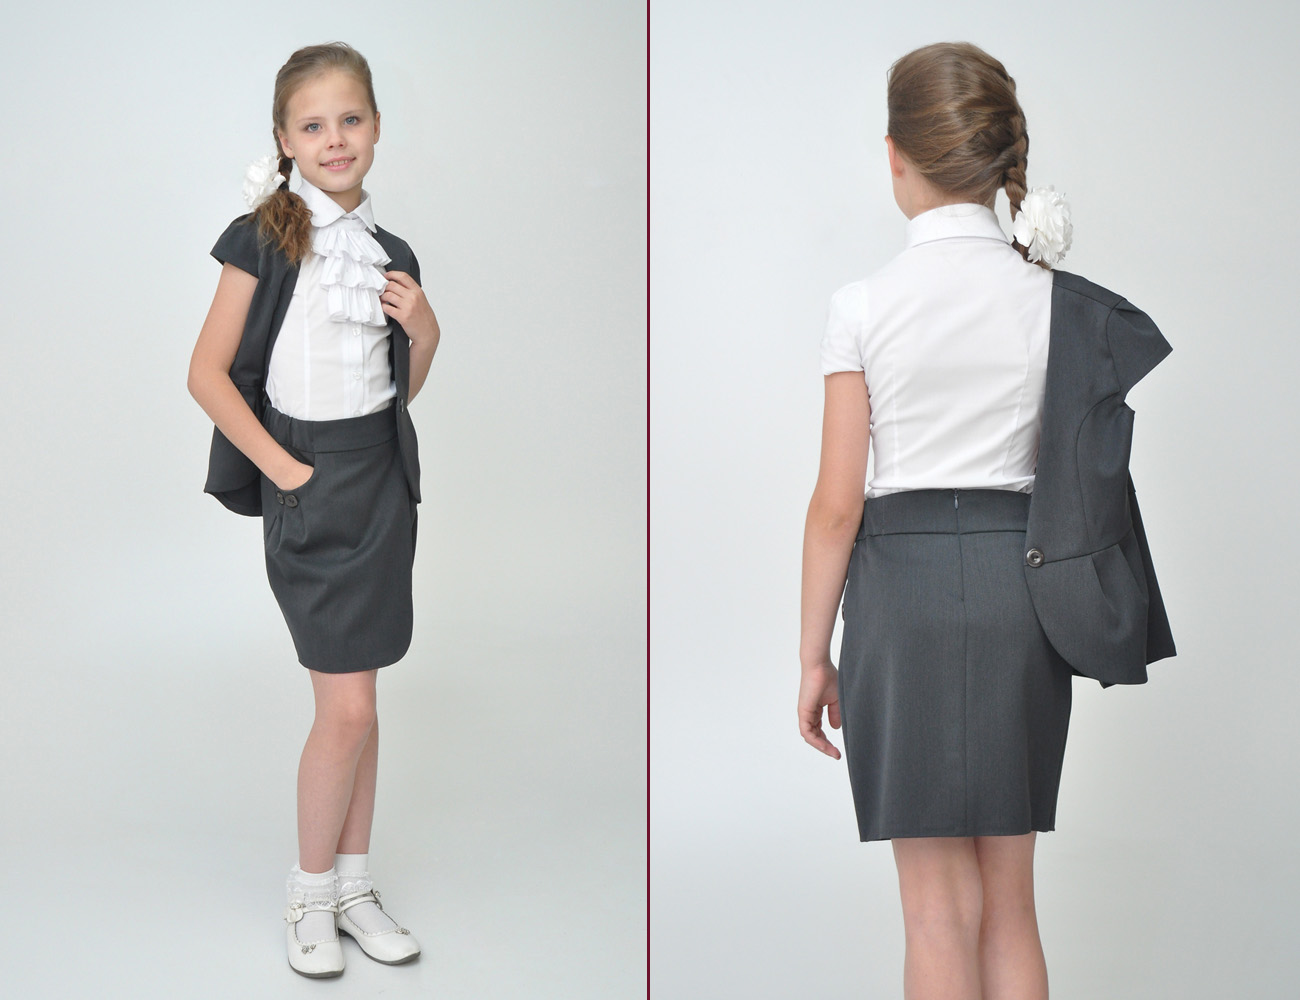 Школьная юбка для девочки